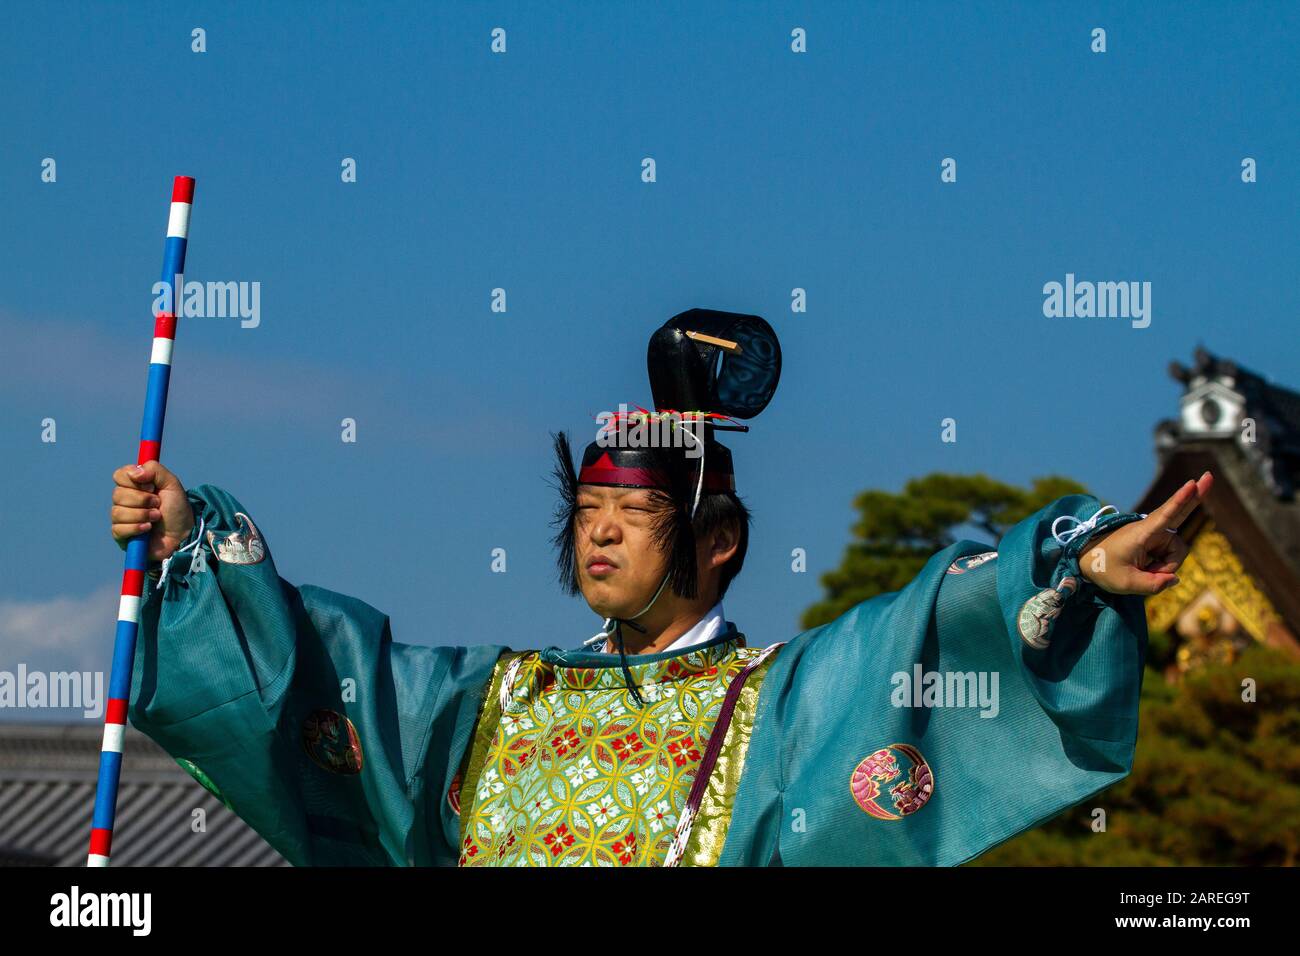 Japon, Kyoto, Palais impérial, cérémonie tenue avec des vêtements japonais traditionnels Jidai Matsuri (Festival des âges) Banque D'Images